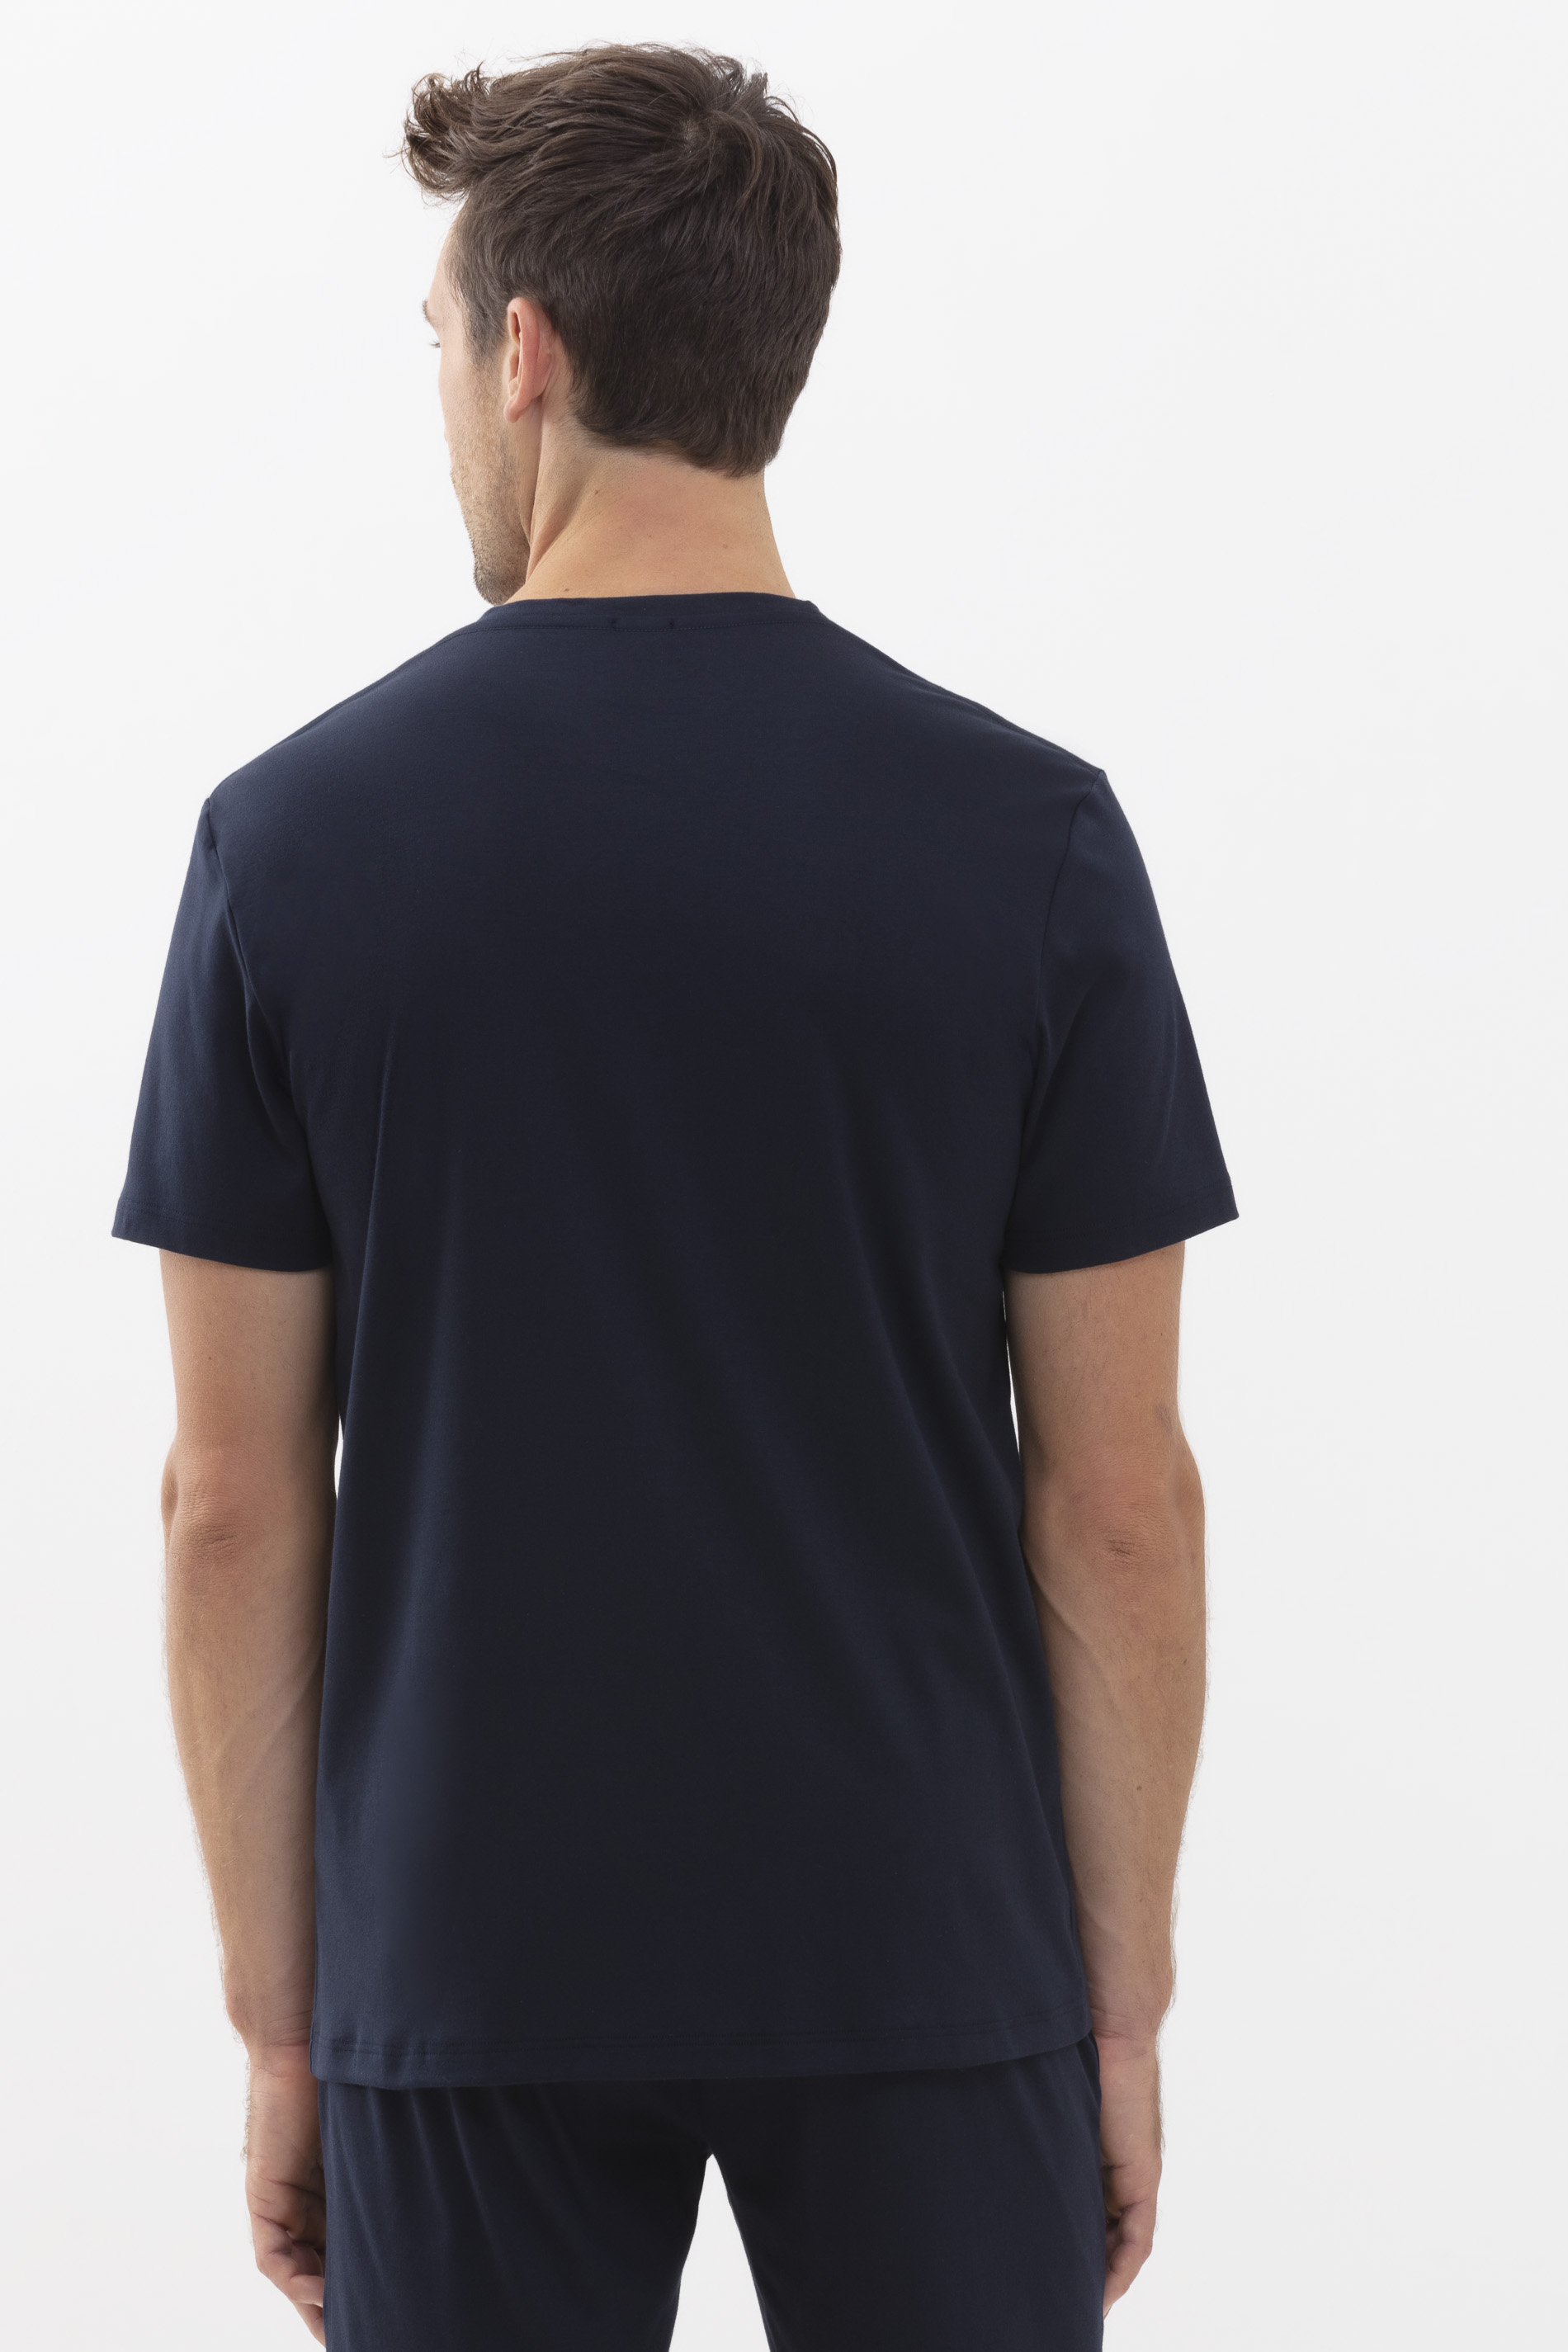 T-Shirt Indigo Serie Aarhus Rückansicht | mey®